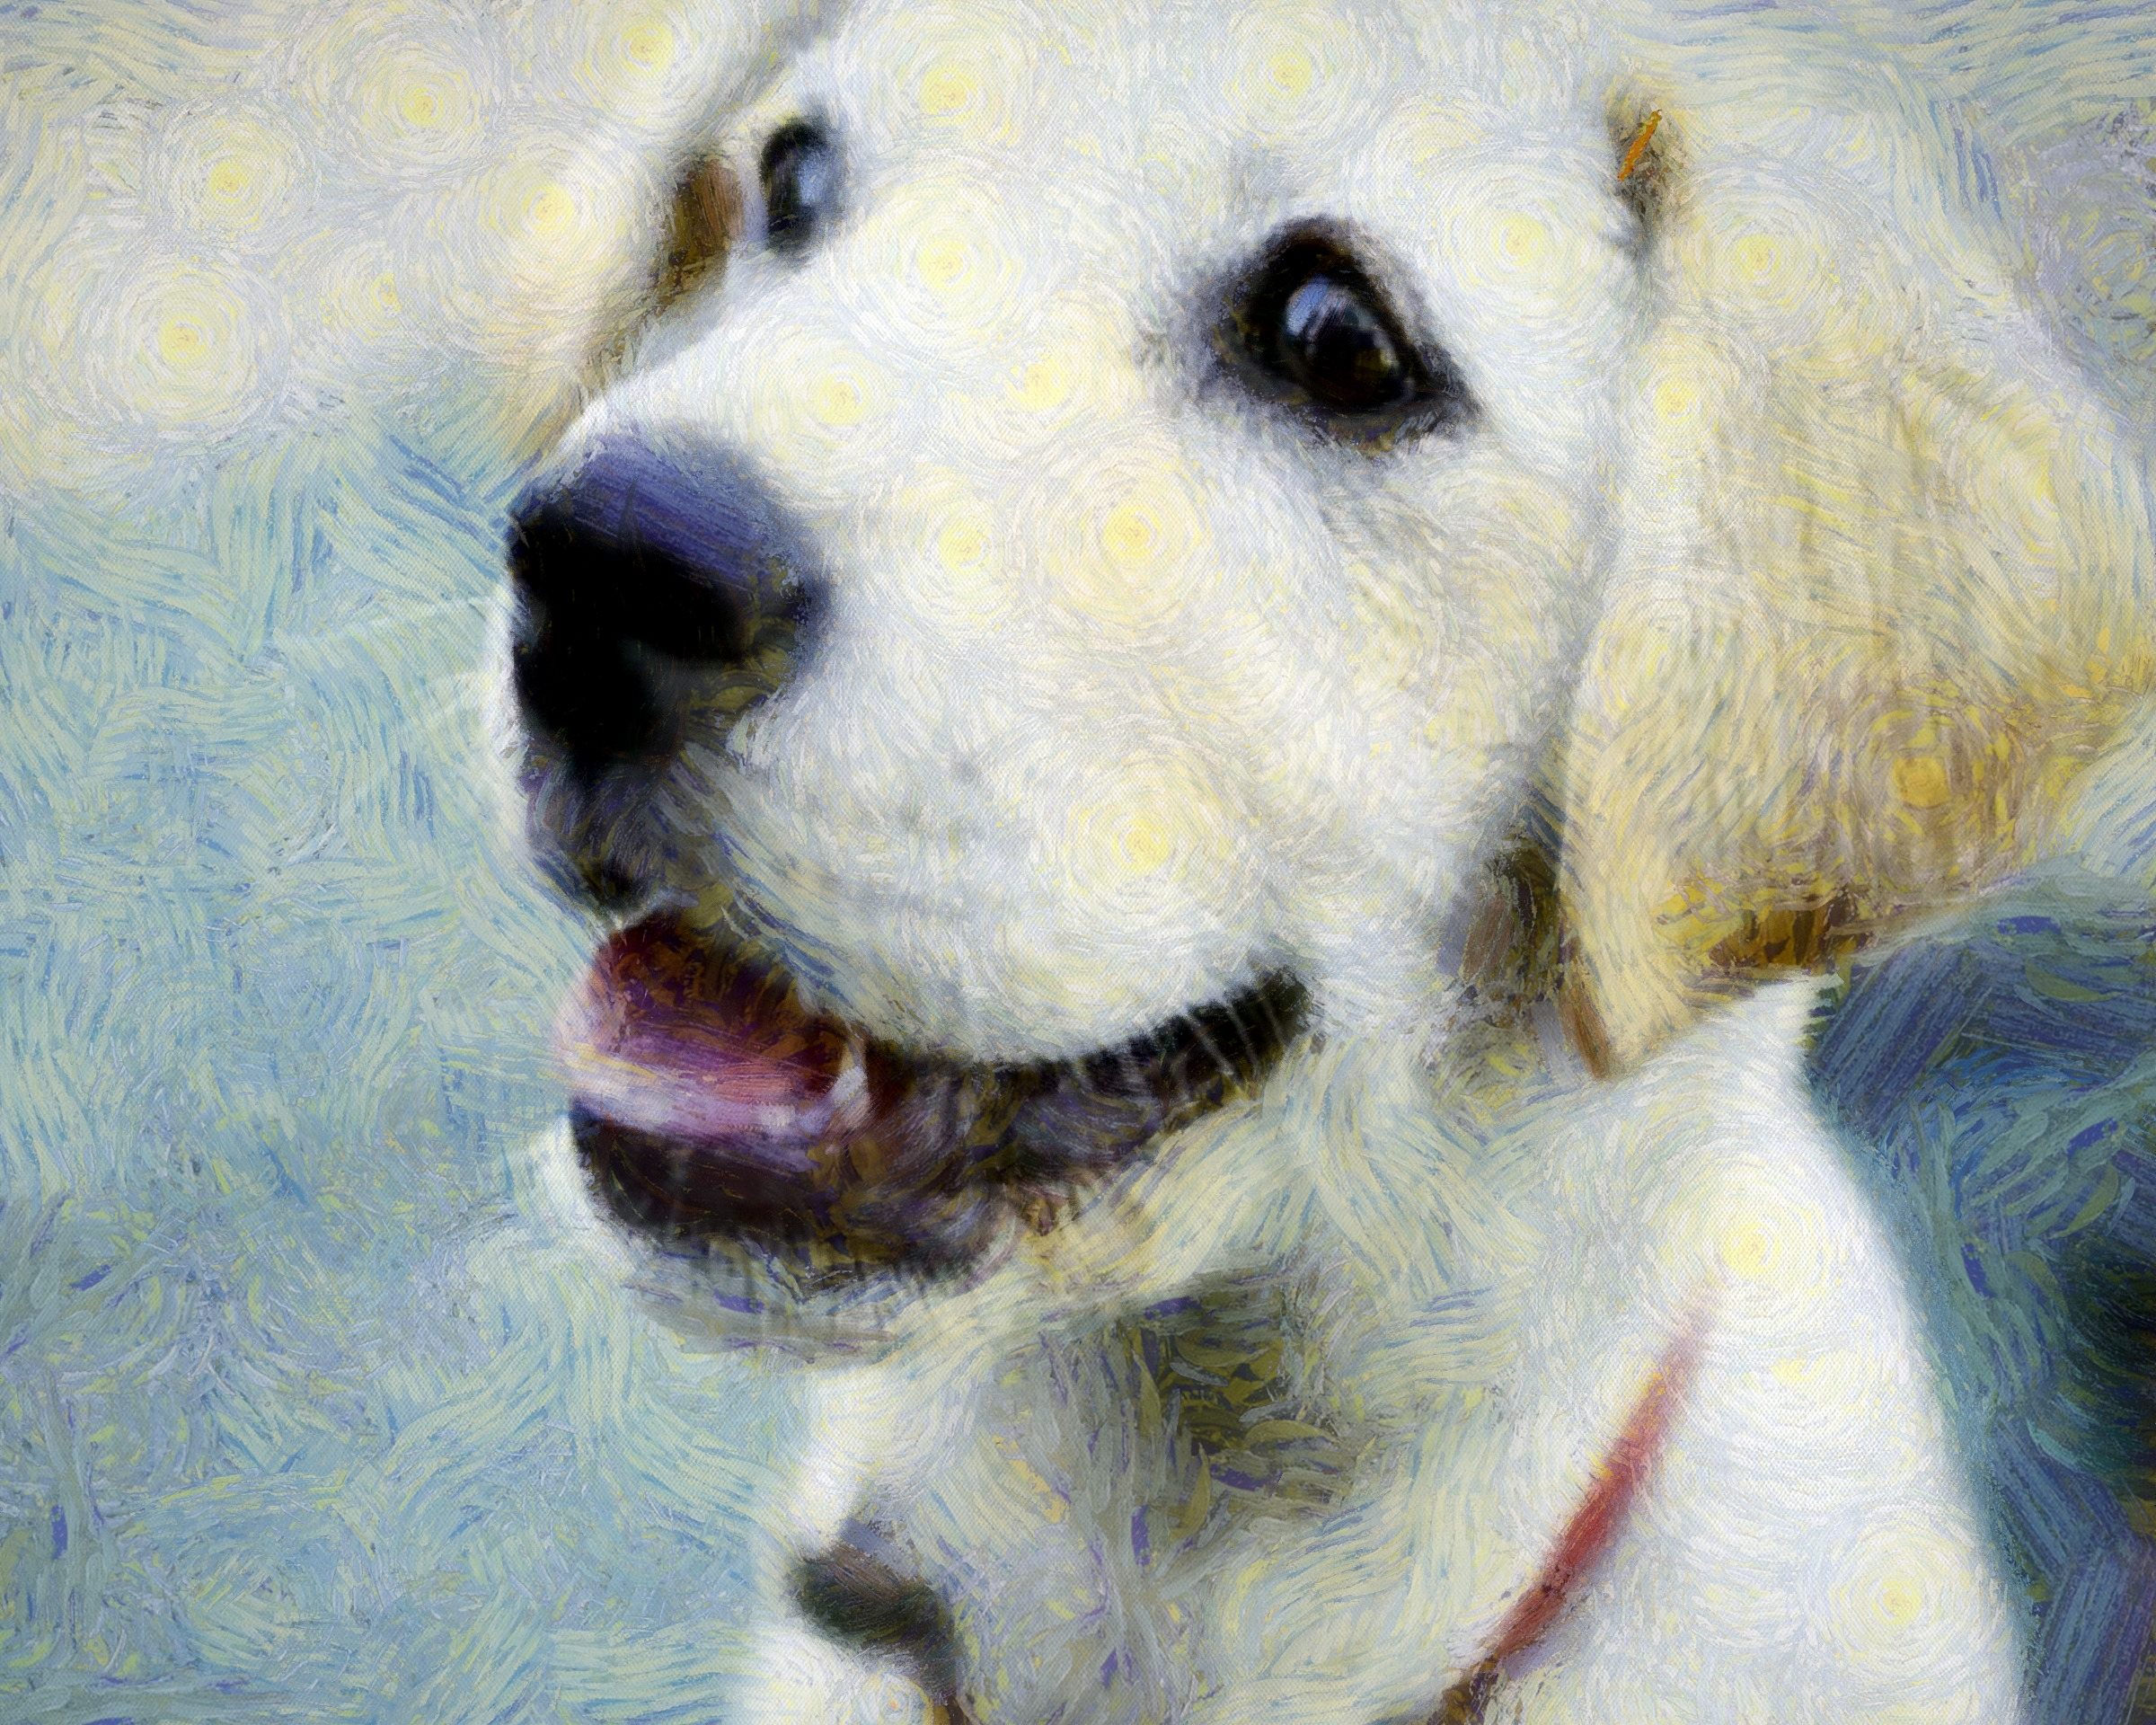 dog, puppy, small dog, dog playing, dog looking, nice dog, dog free image, dog free picture, license test dog, public domain image!